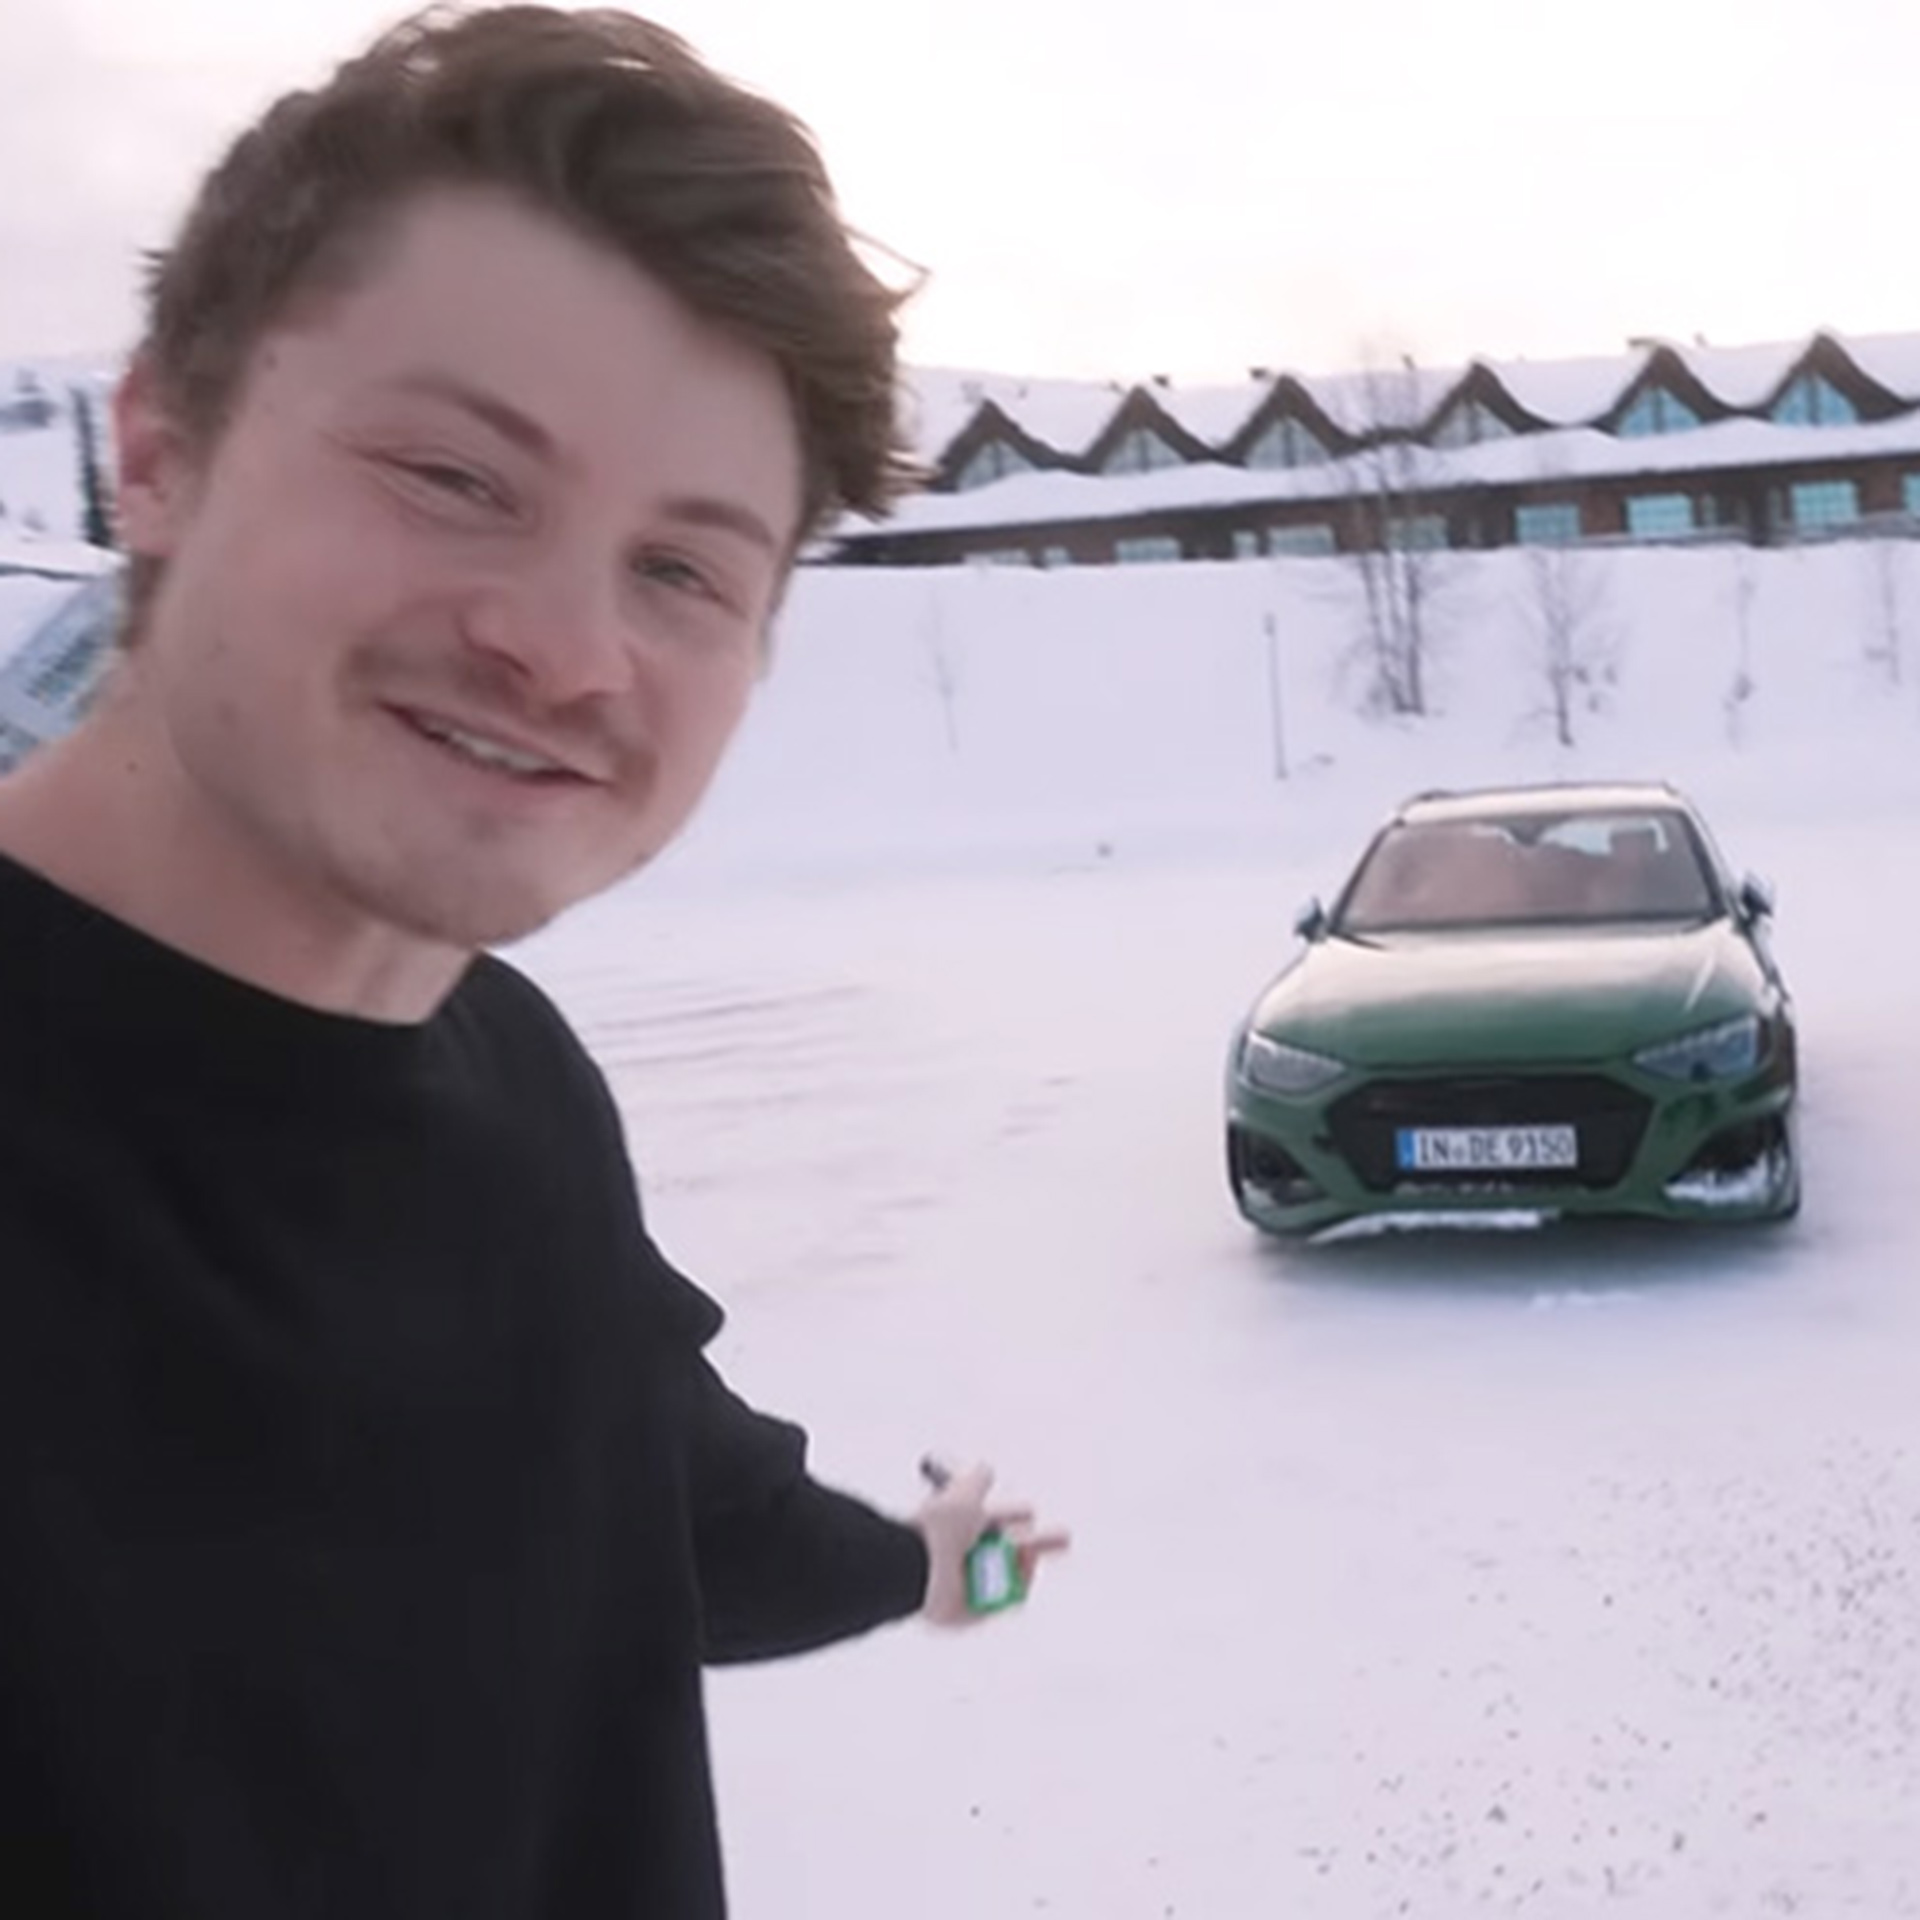 Youtuber Felix von der Laden steht vor einem dunkelgrünen Audi Modell im Schnee bei der Audi ice experience in Finnland